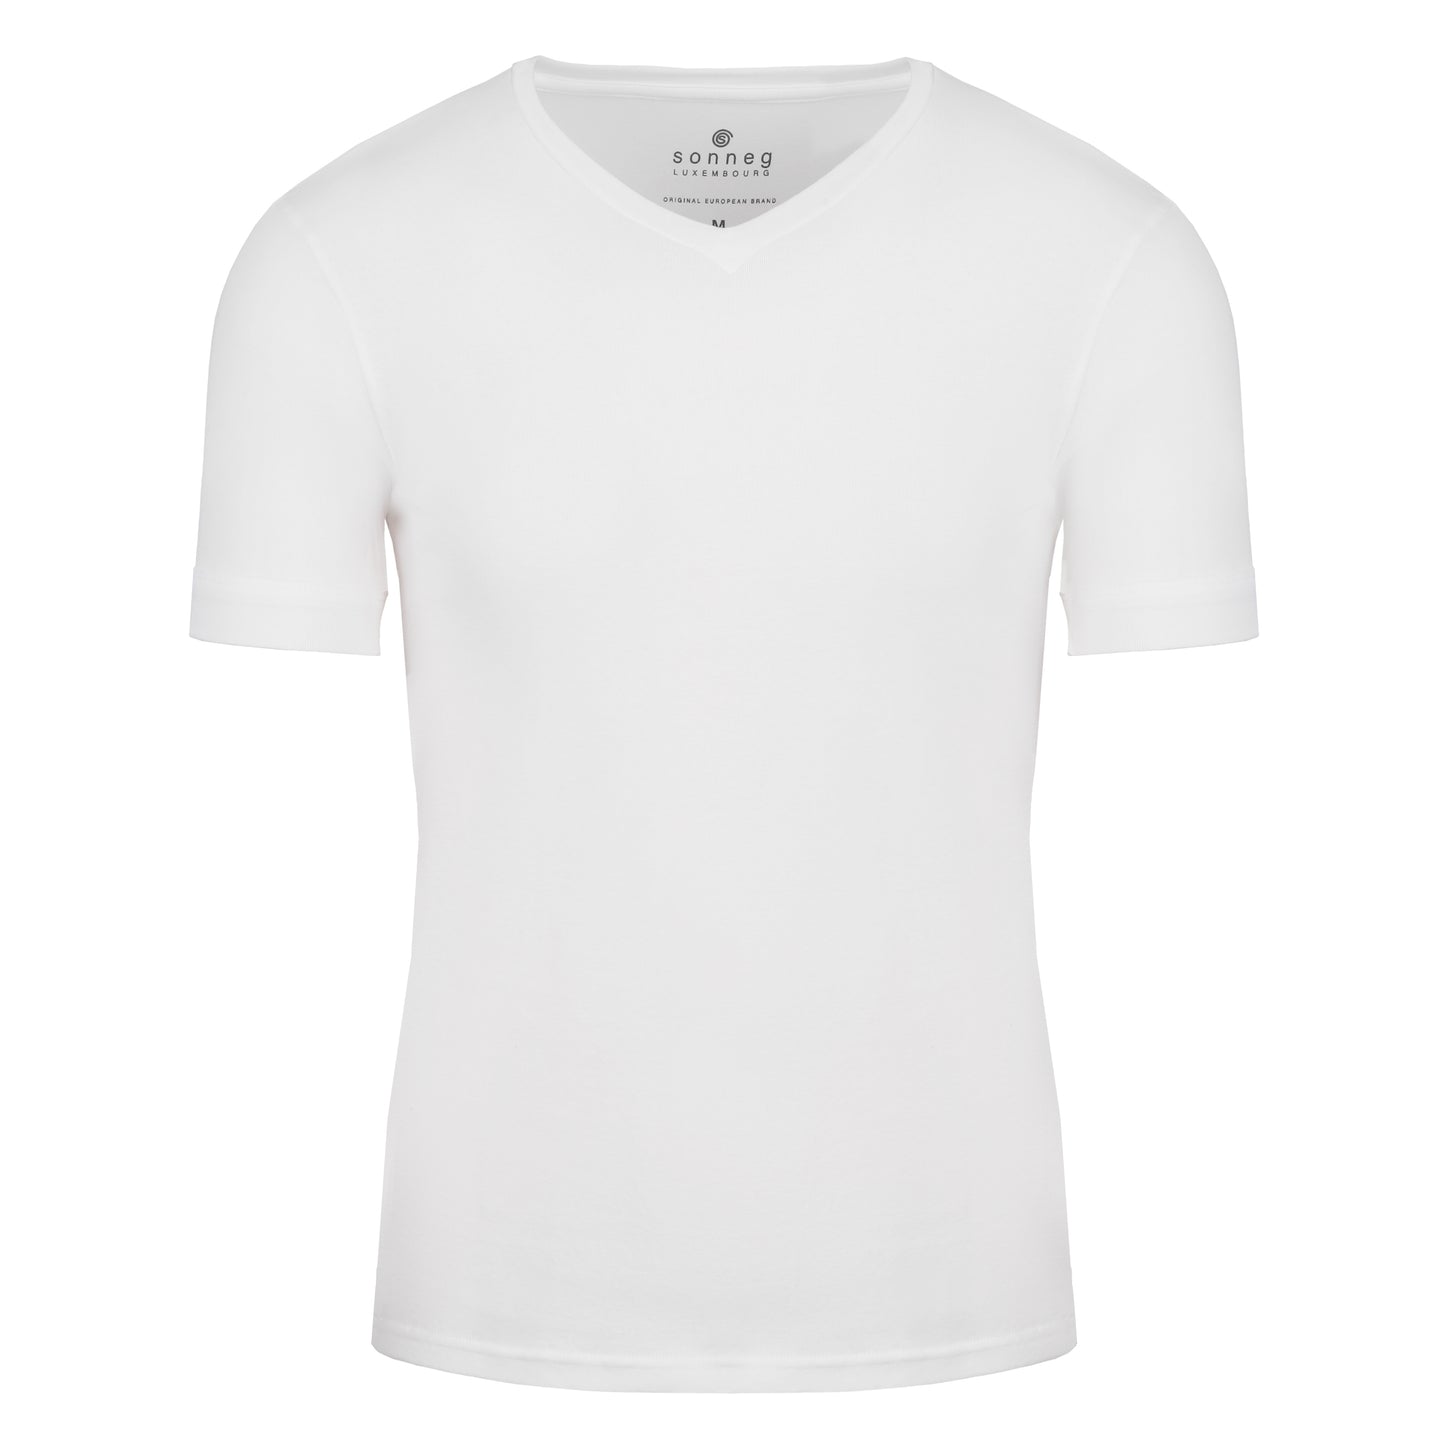 V-neck white T-shirt for men – pack of 2 or 4 tees